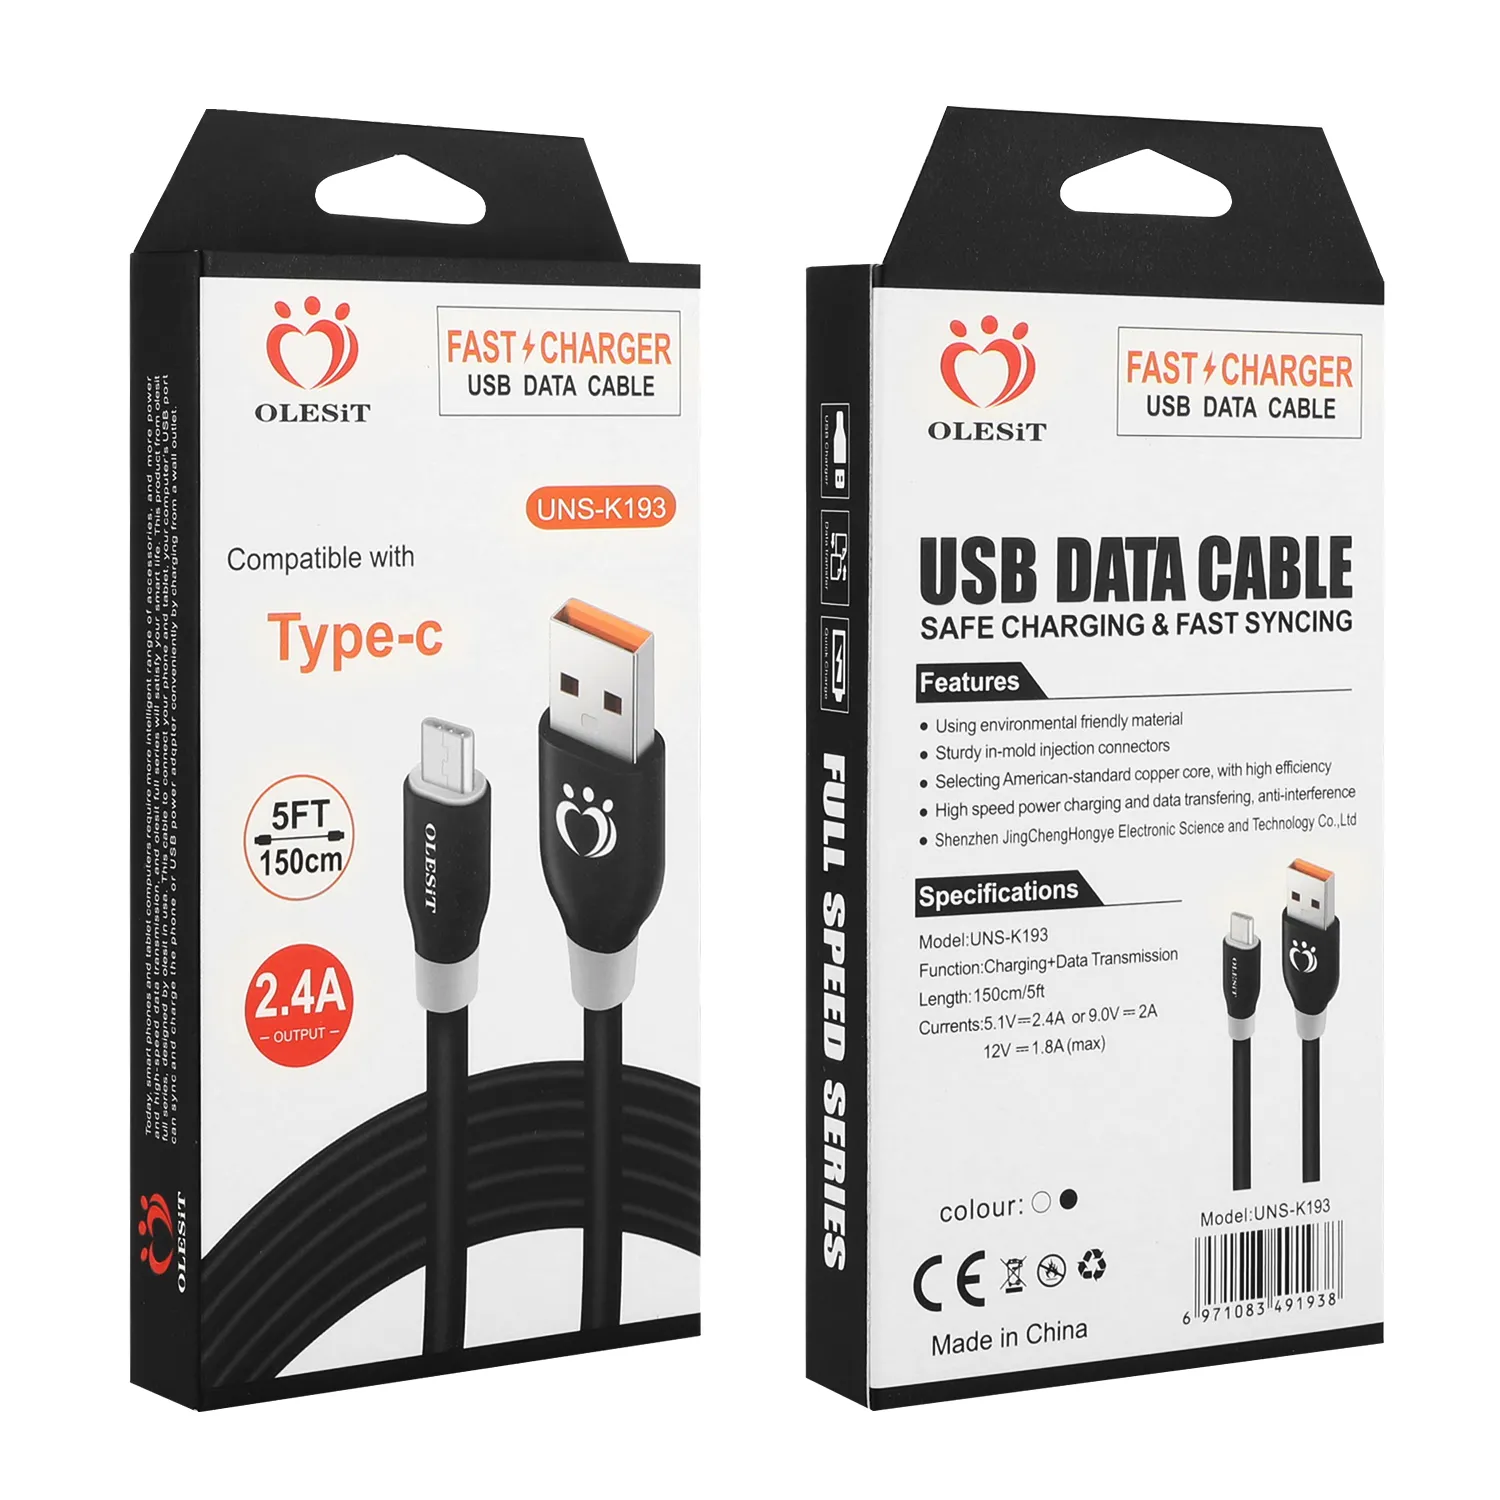 Kable Olesit 1.5m 5ft 3M 10FT OD5.0 odważna szybka ładowarka Micro USB Data type-c kabel do samsung huawei z pudełkiem detalicznym